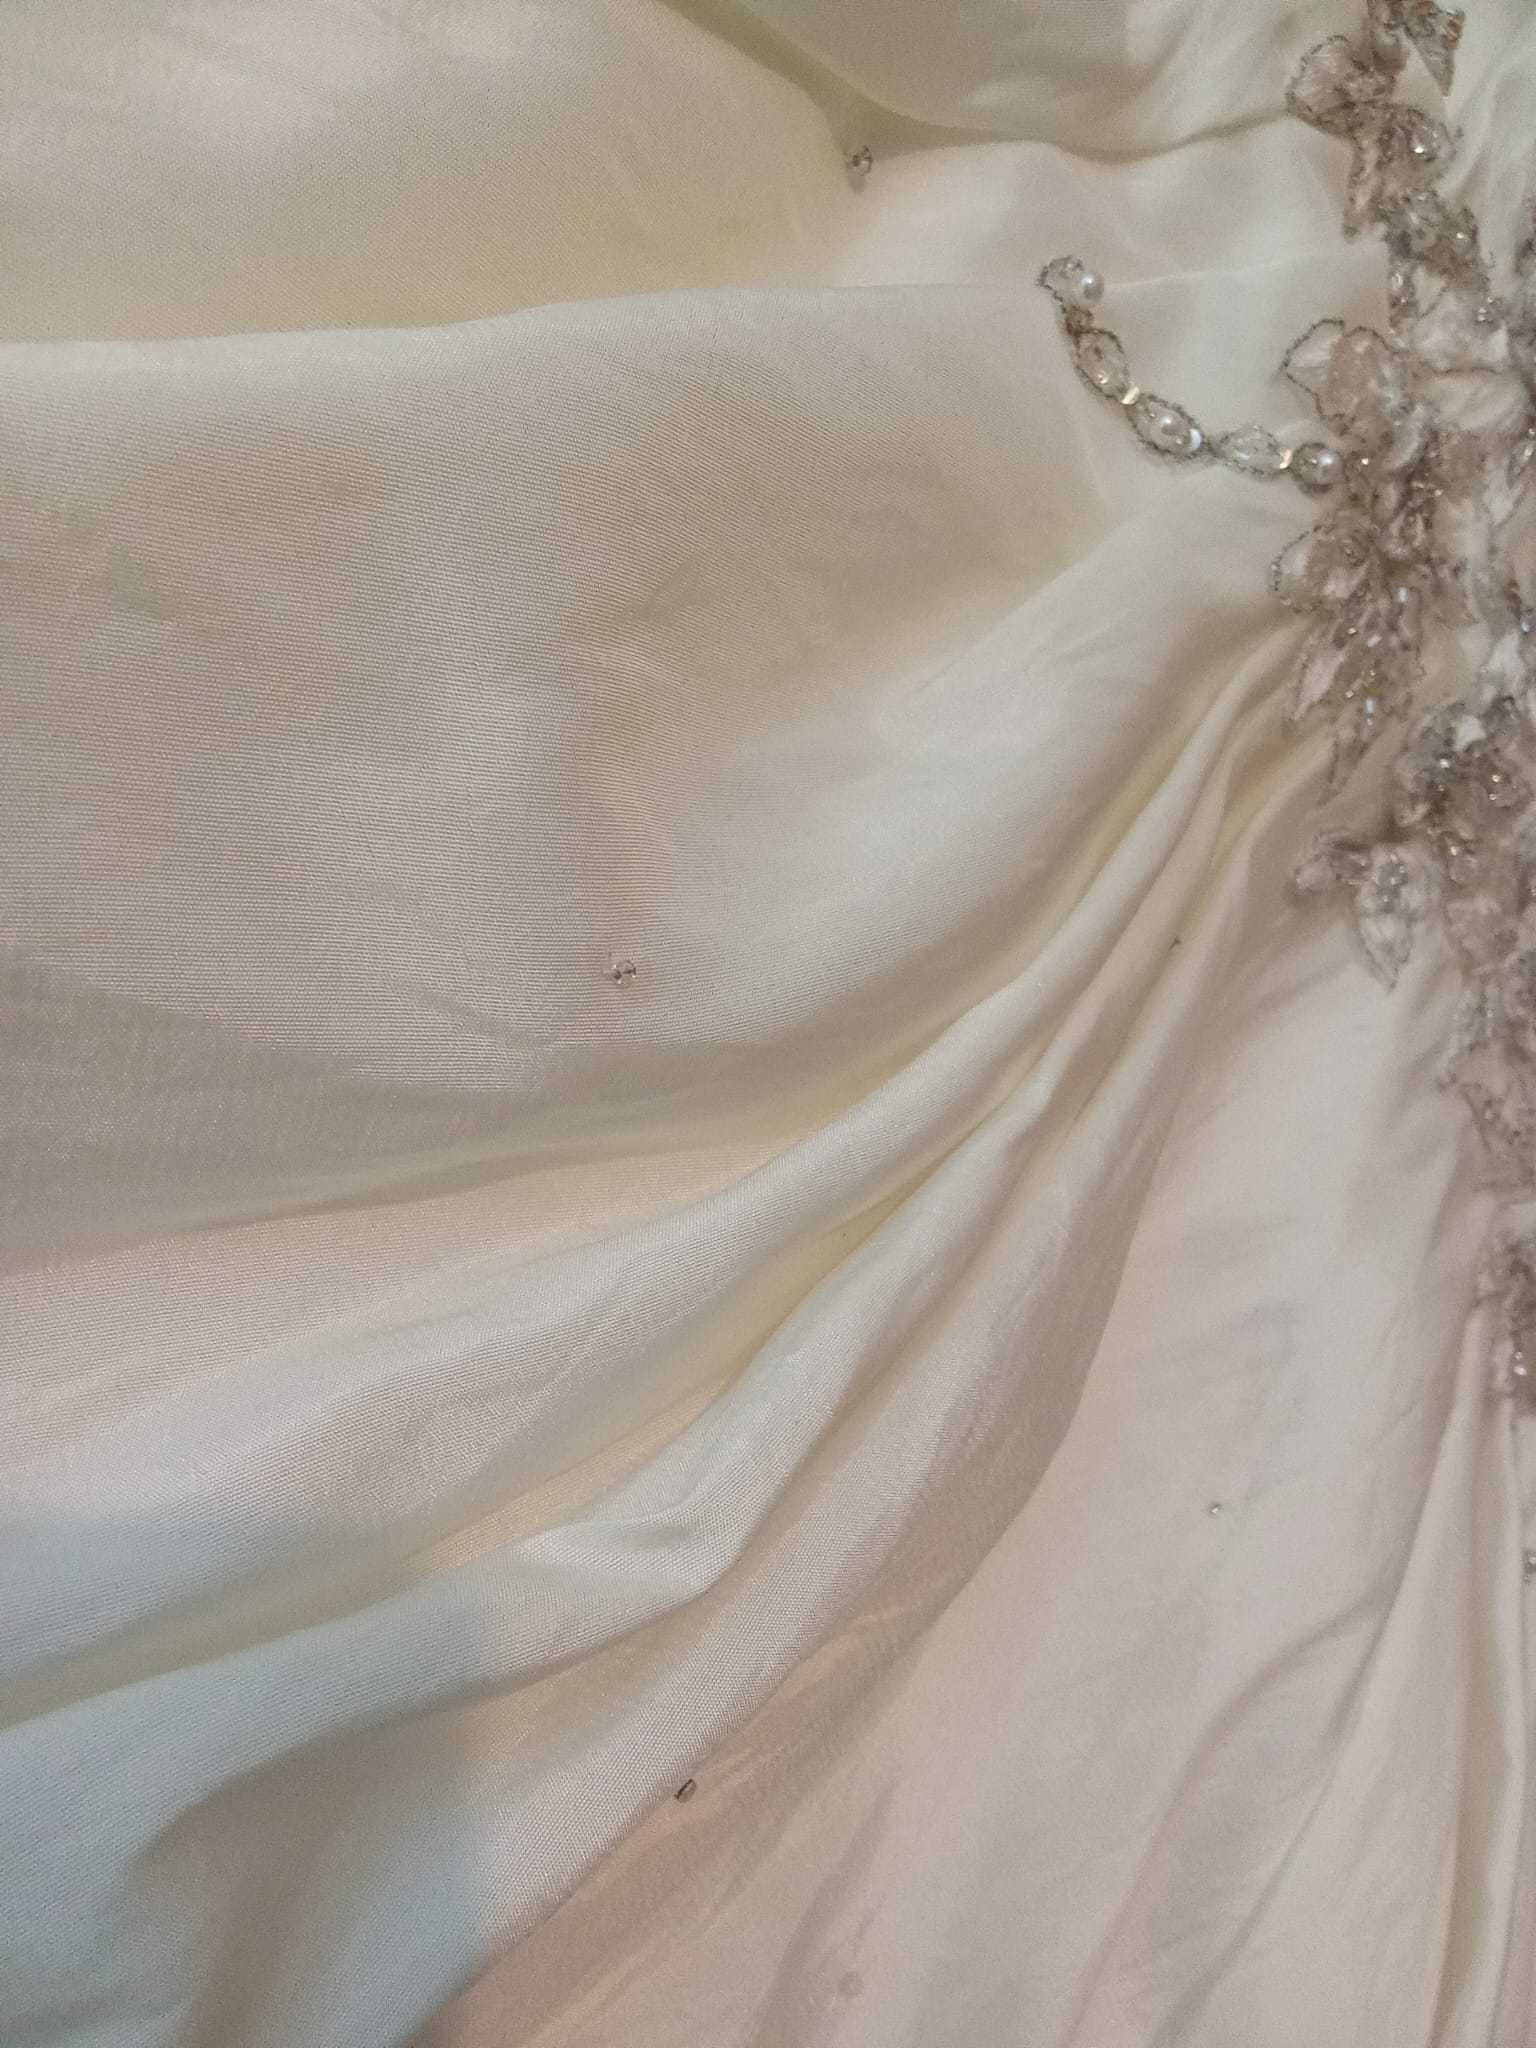 Vestido de Noiva Diva, silhueta de modelo com Corte "cai-cai"